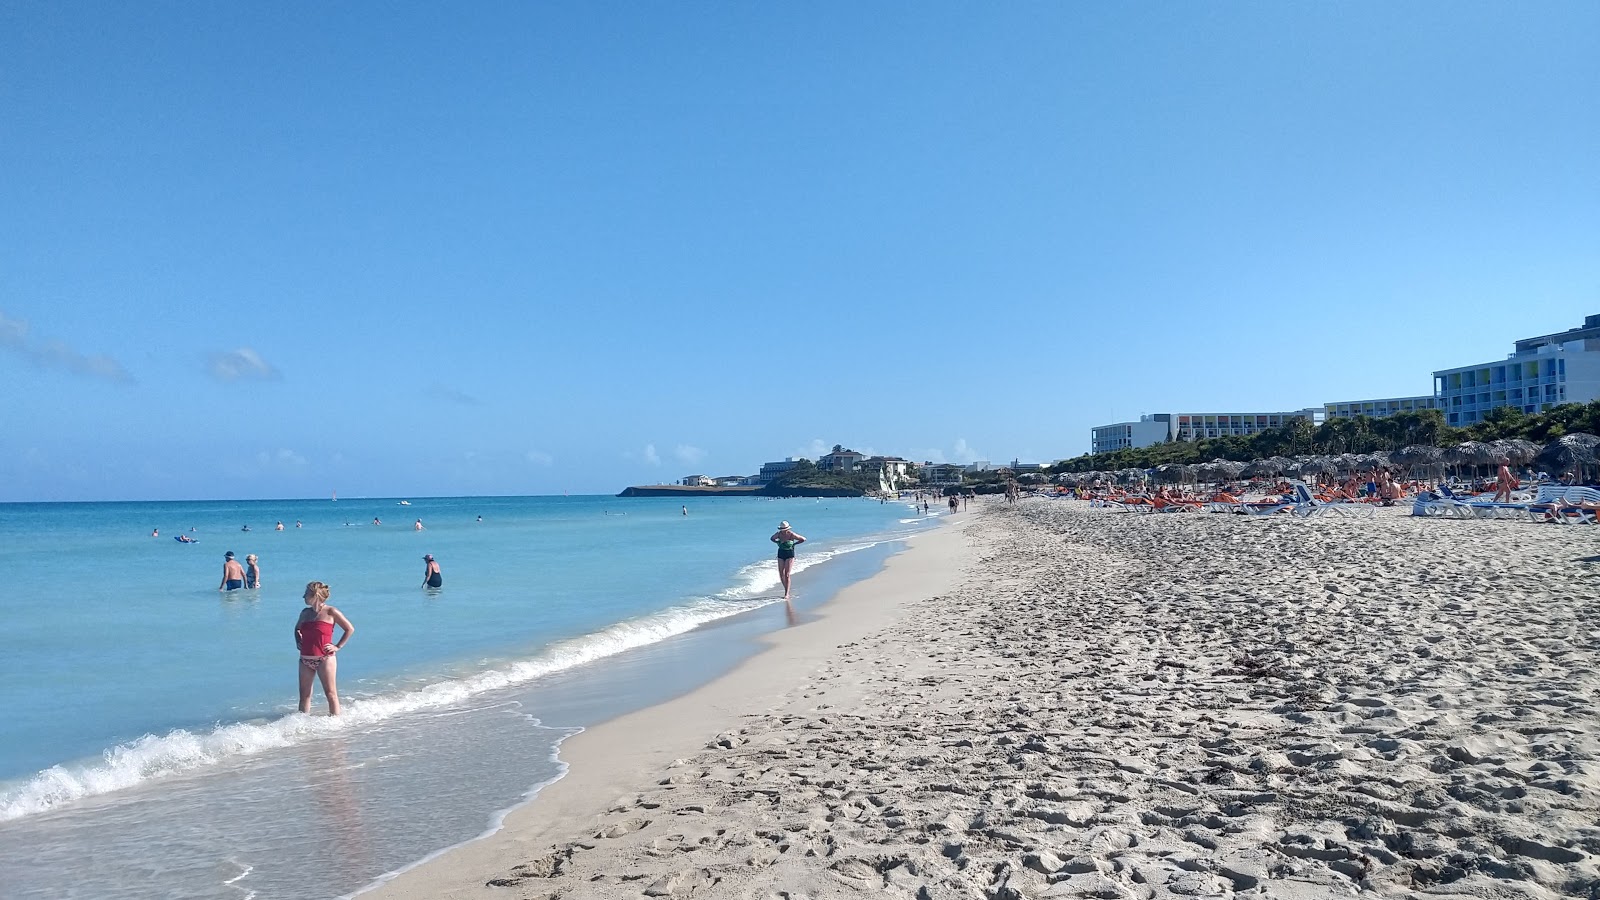 Varadero Plajı II'in fotoğrafı geniş plaj ile birlikte